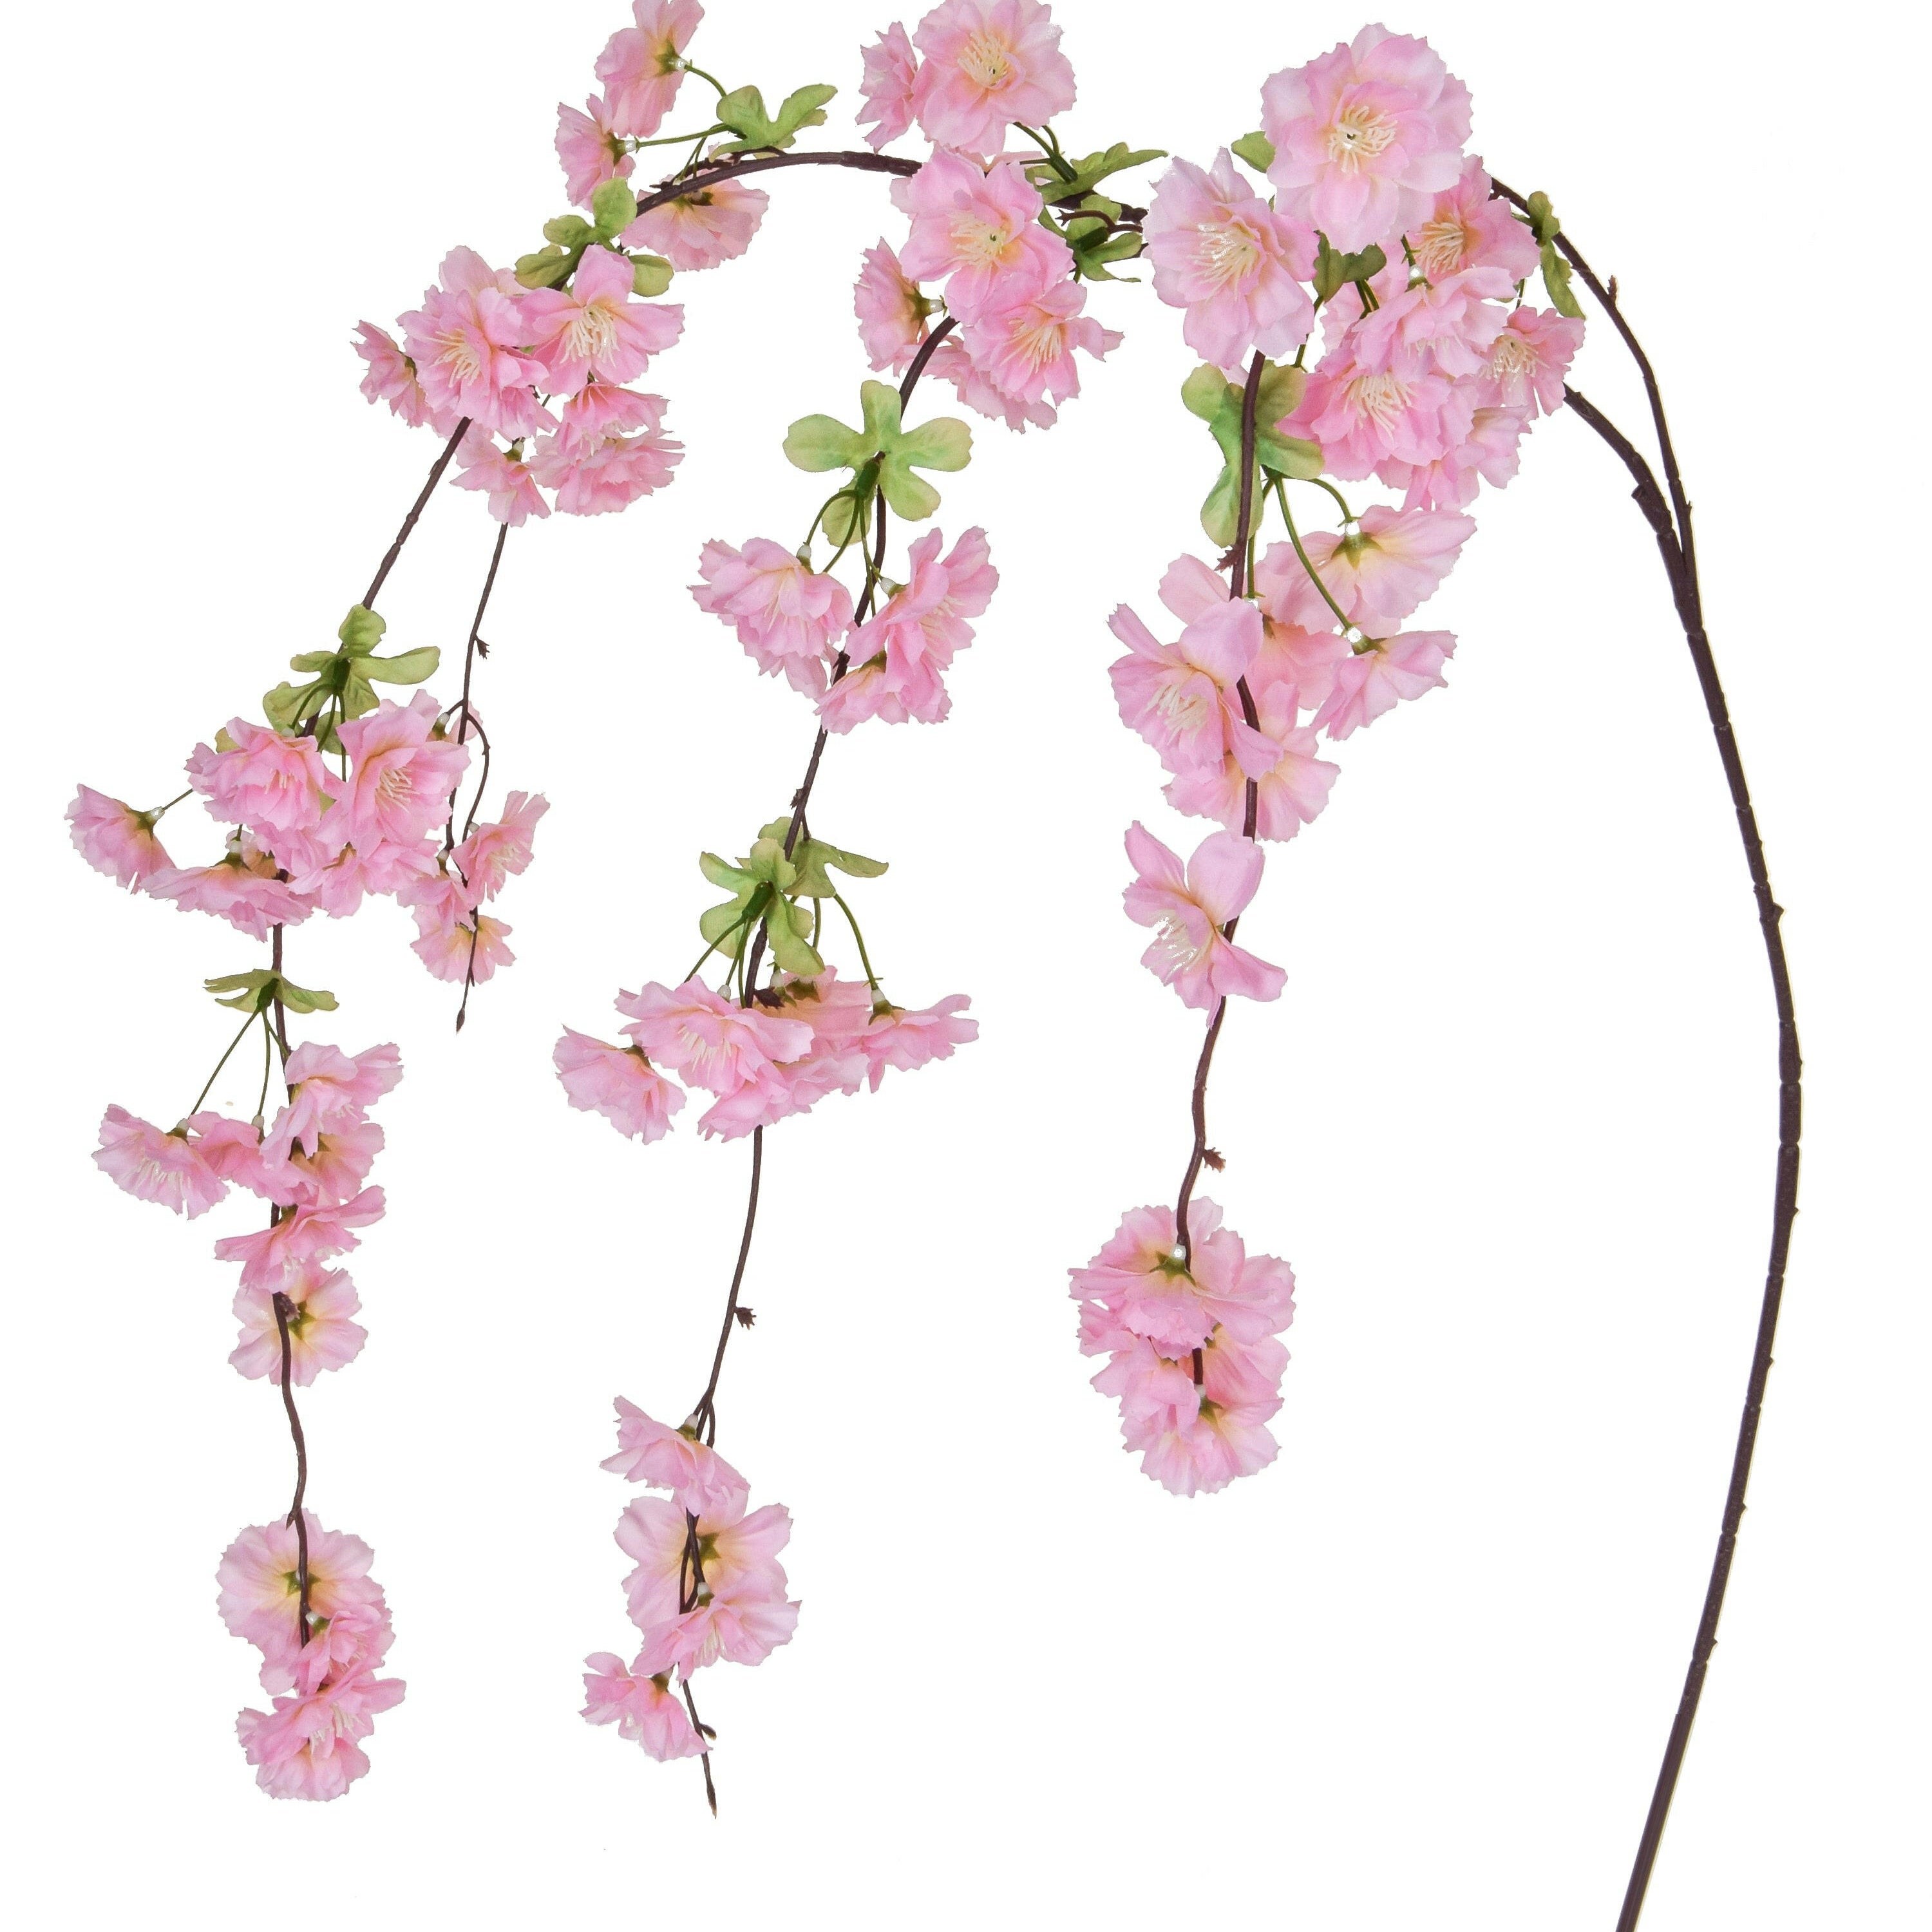 Artificial Silk Cherry Blossom